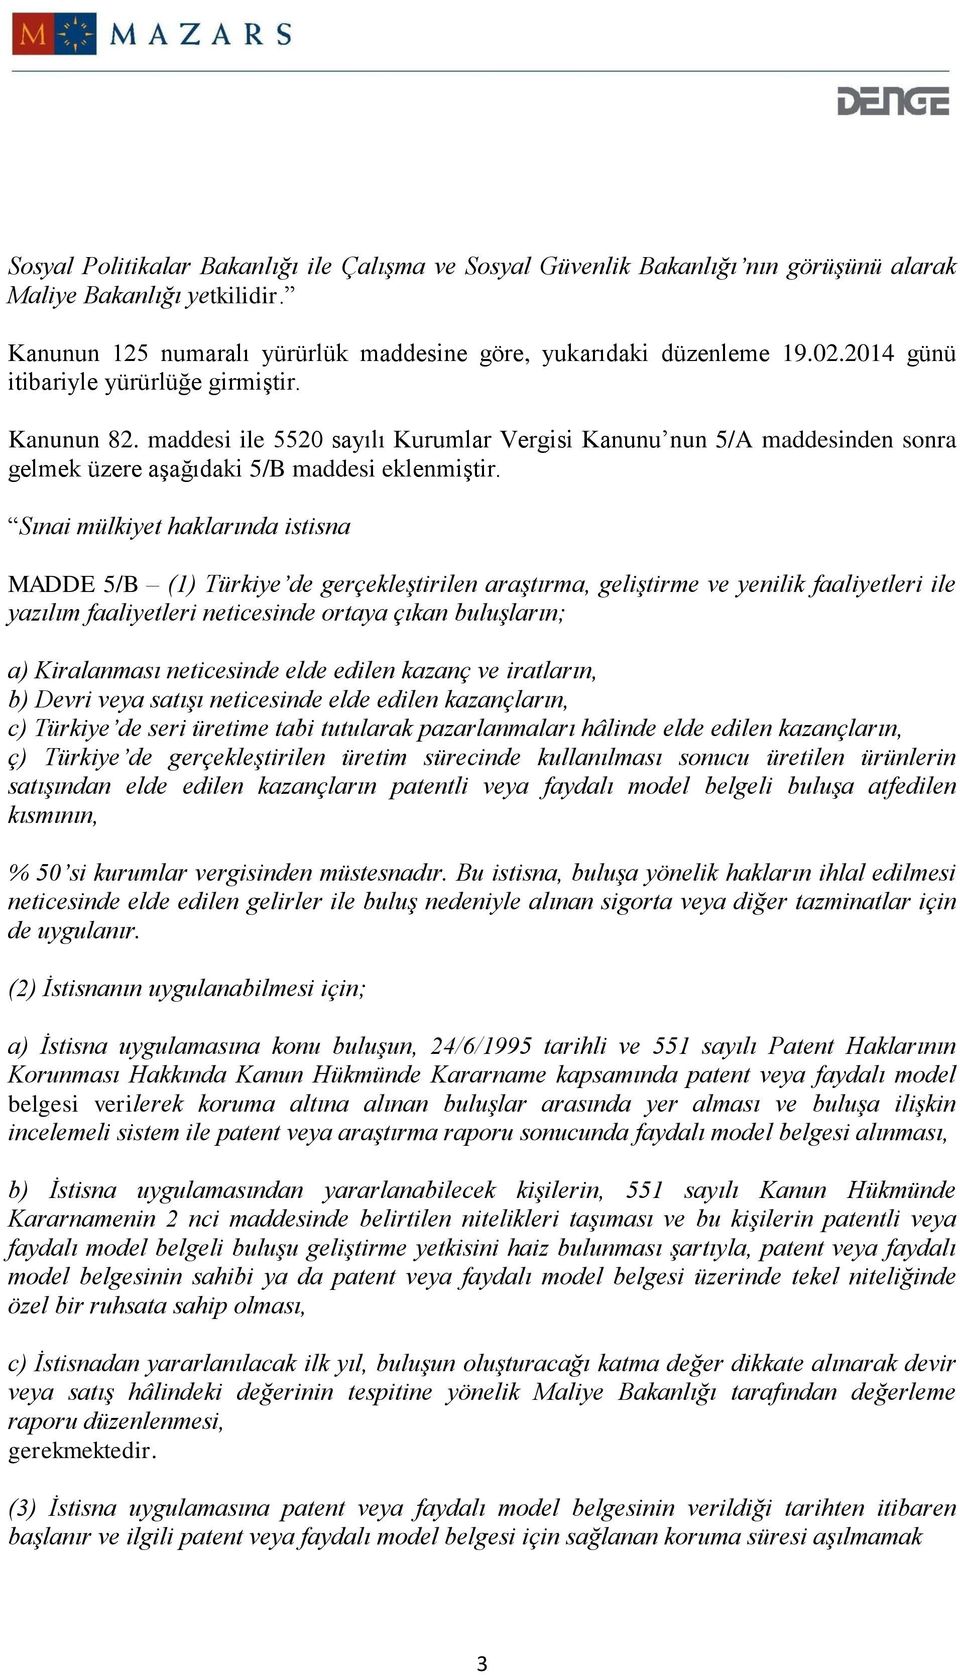 Sınai mülkiyet haklarında istisna MADDE 5/B (1) Türkiye de gerçekleştirilen araştırma, geliştirme ve yenilik faaliyetleri ile yazılım faaliyetleri neticesinde ortaya çıkan buluşların; a) Kiralanması